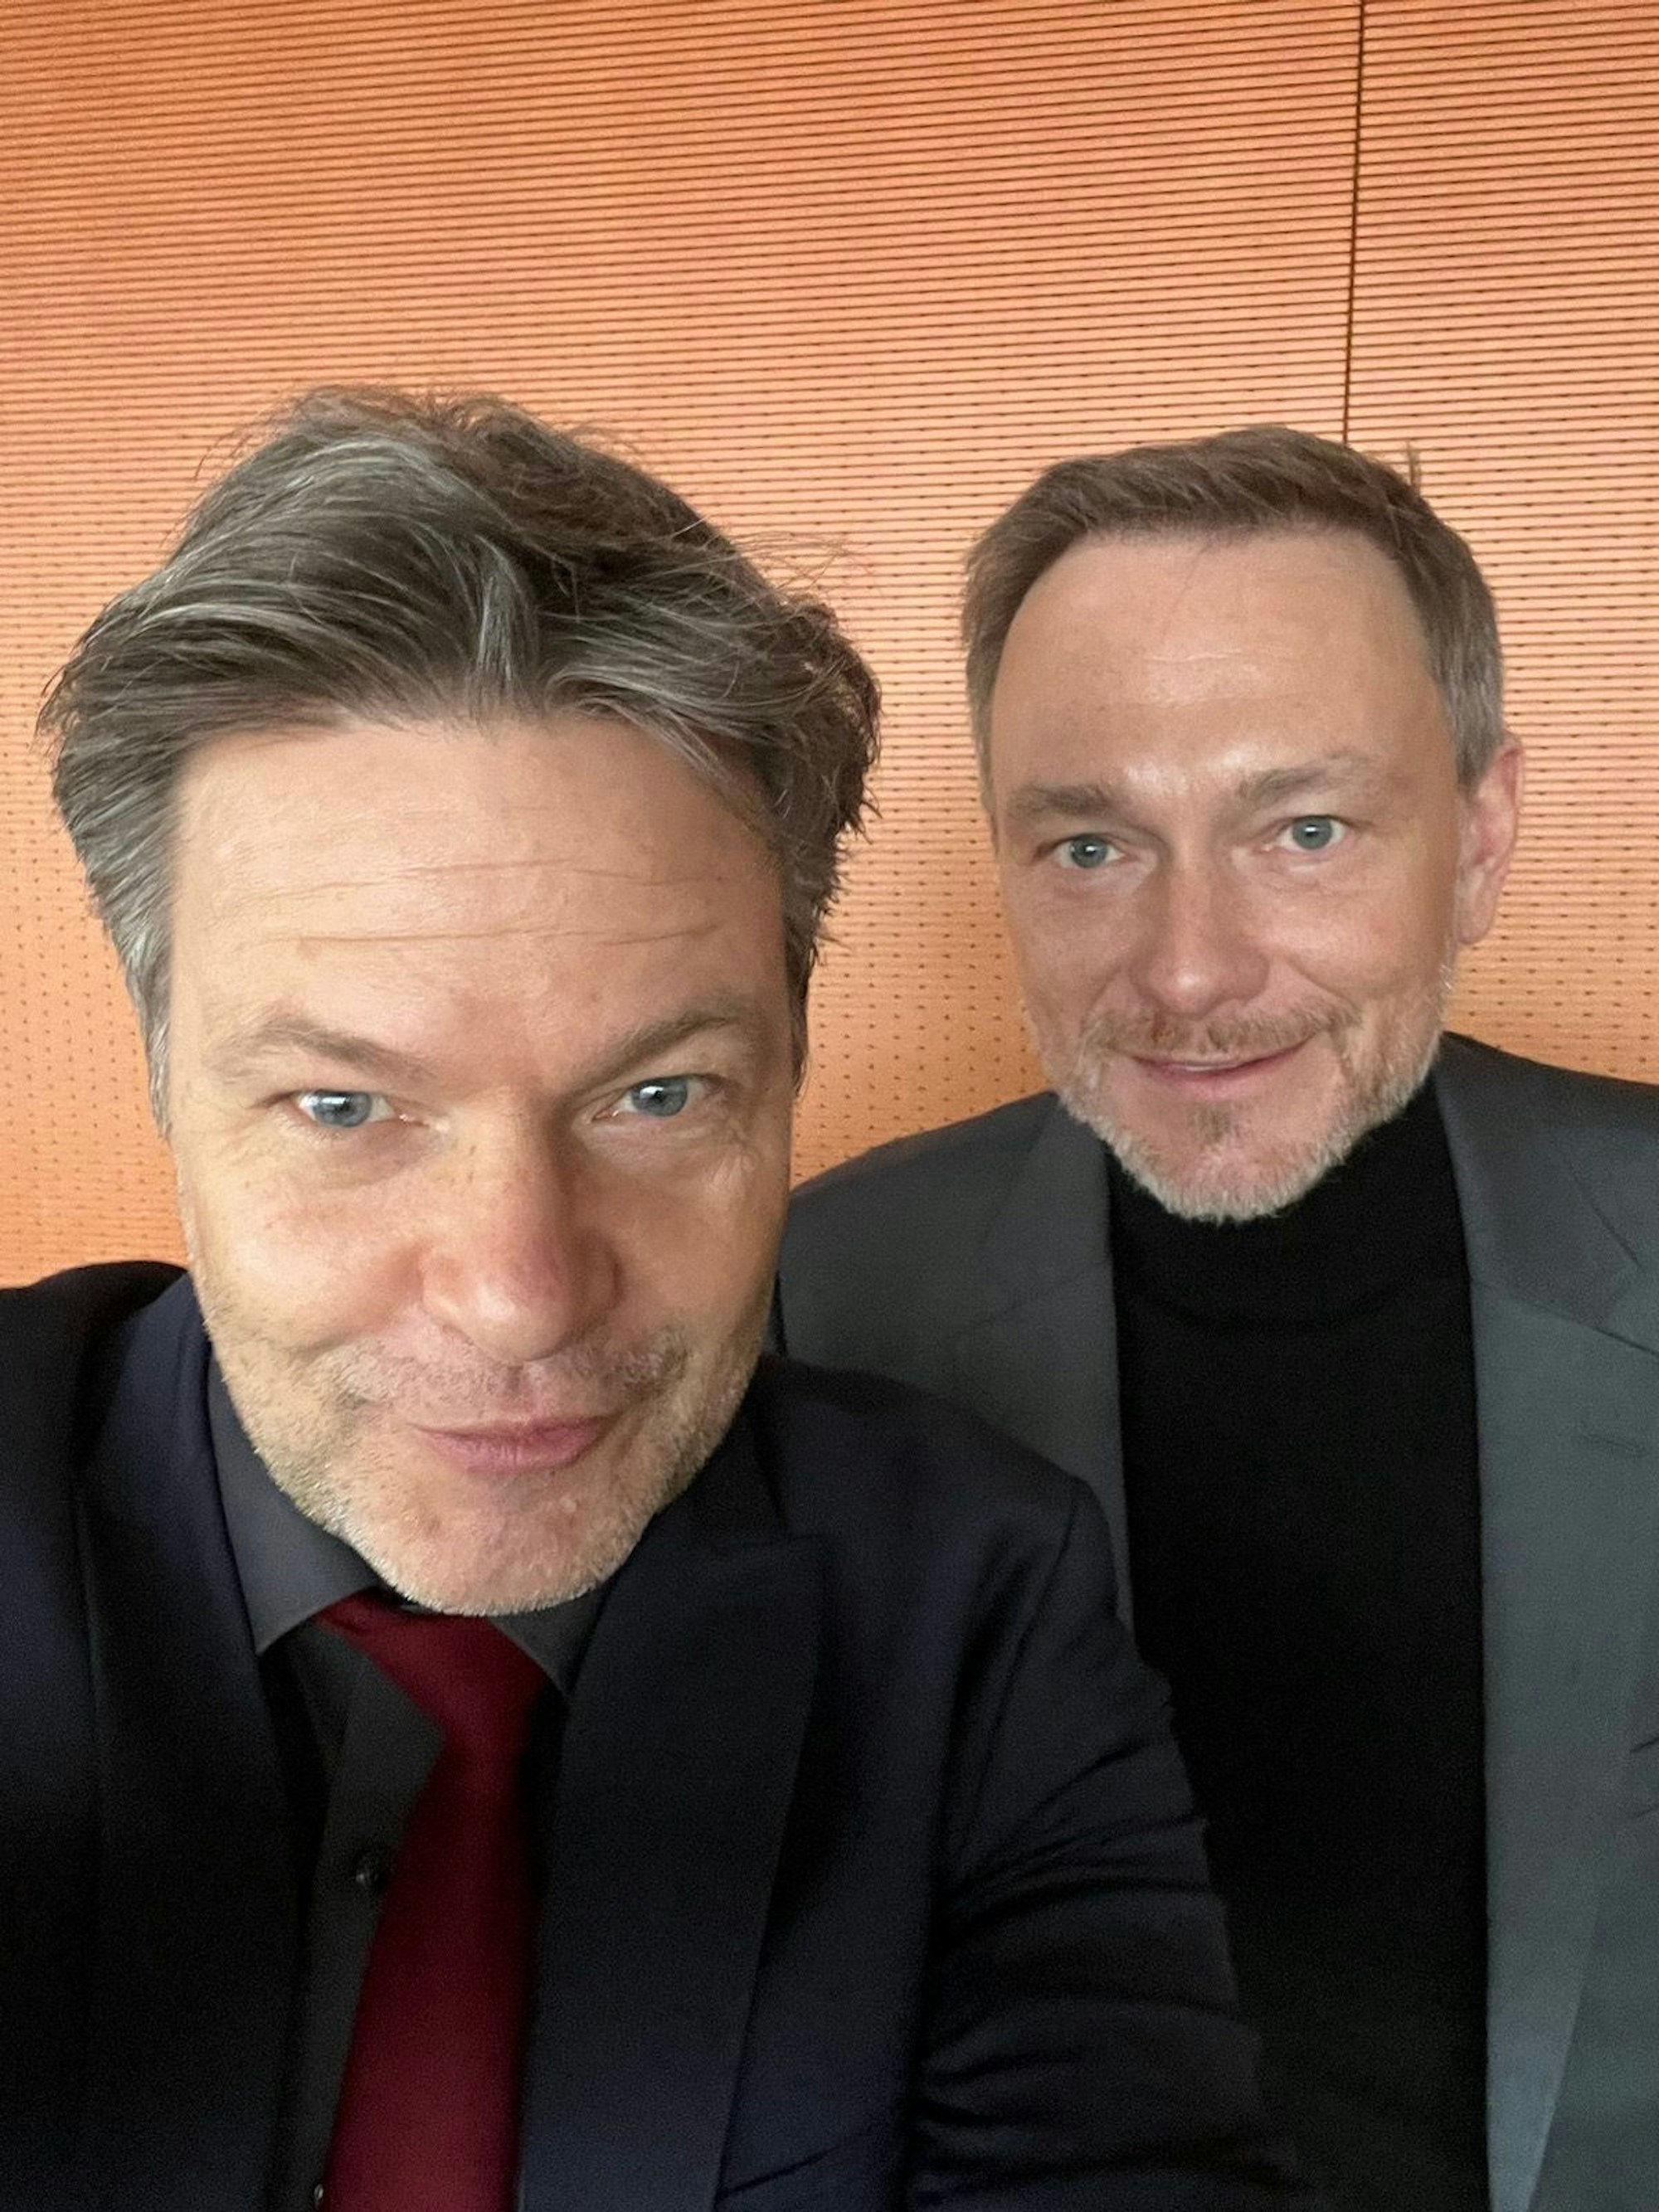 Wirtschaftsminister Robert Habeck (Die Grünen) und Finanzminister Christian Lindner (FDP) sind auf einem Foto zu sehen, das die Beiden jeweils auf ihrem Instagram-Account veröffentlichten.